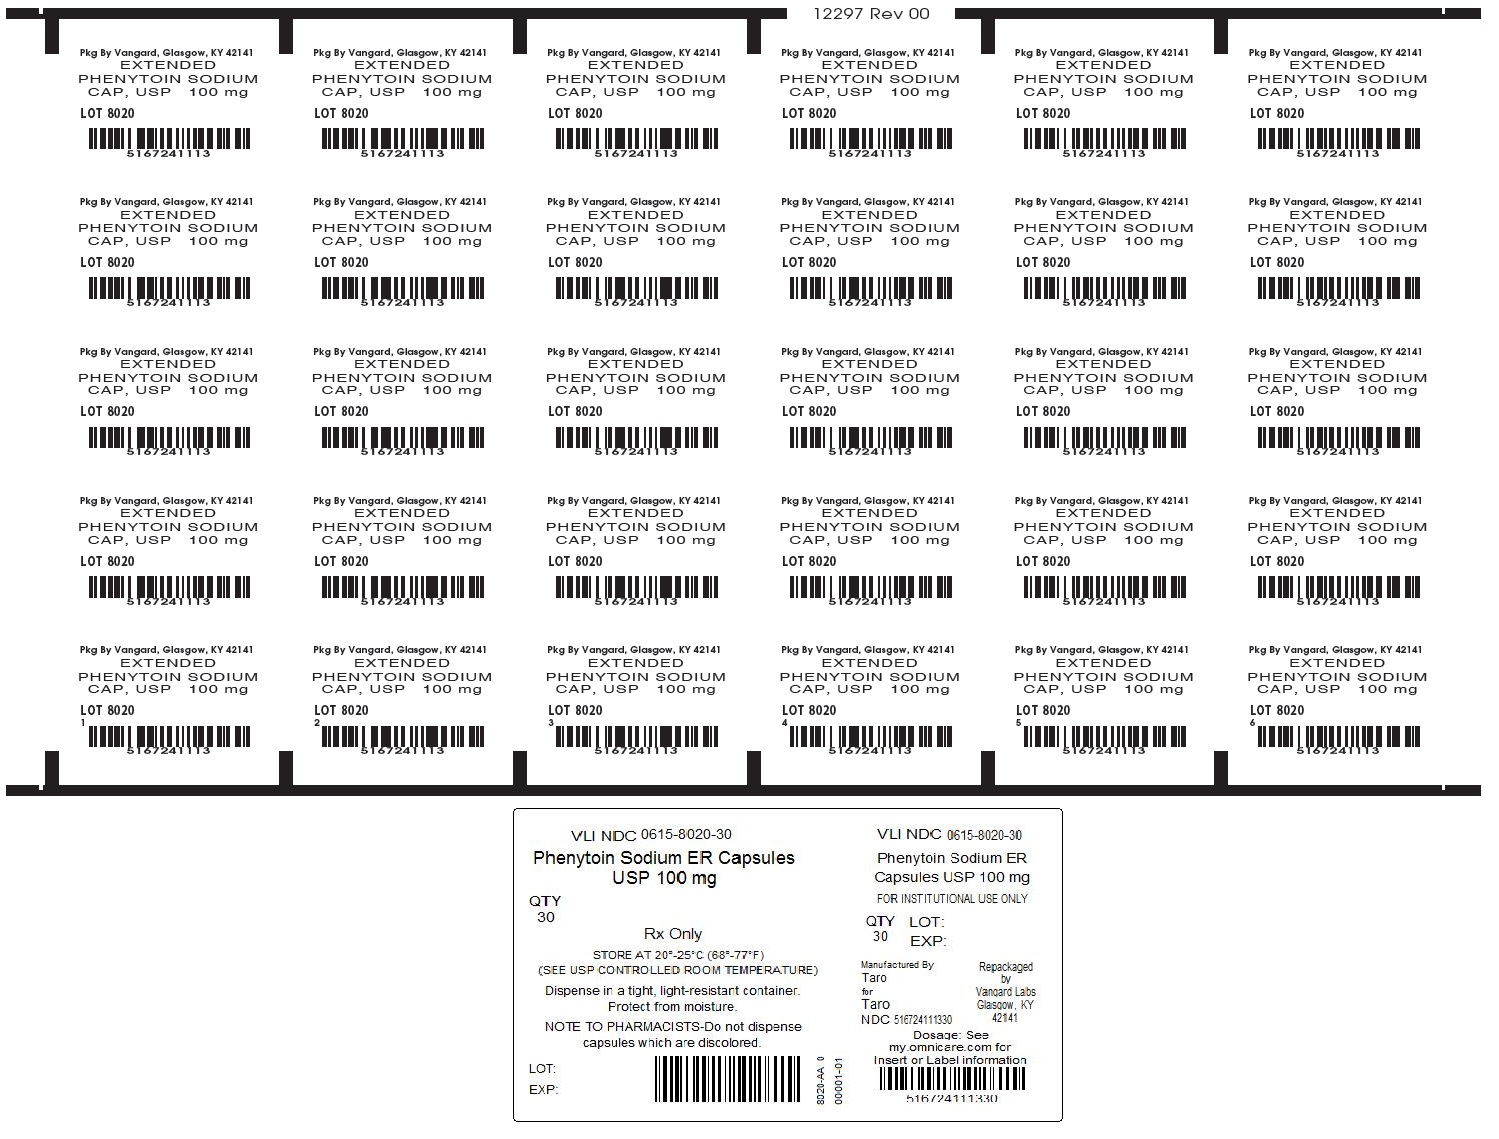 Phenytoin Sodium ER Caps 100mg unit dose box label